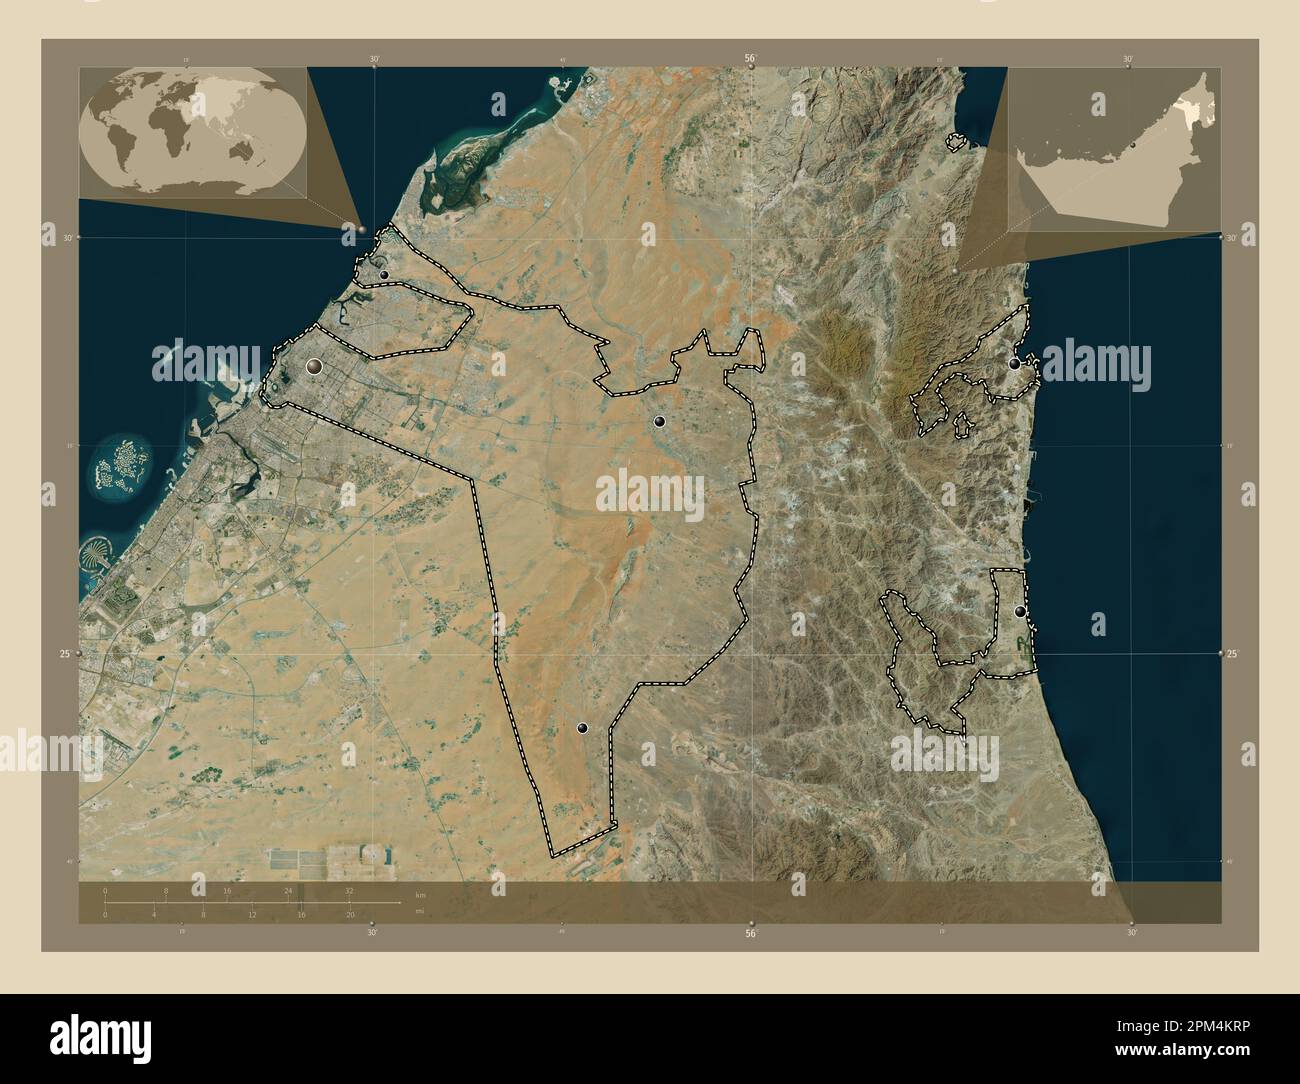 Sharjah, Emirat der Vereinigten Arabischen Emirate. Hochauflösende Satellitenkarte. Standorte der wichtigsten Städte der Region. Eckkarten für zusätzliche Standorte Stockfoto